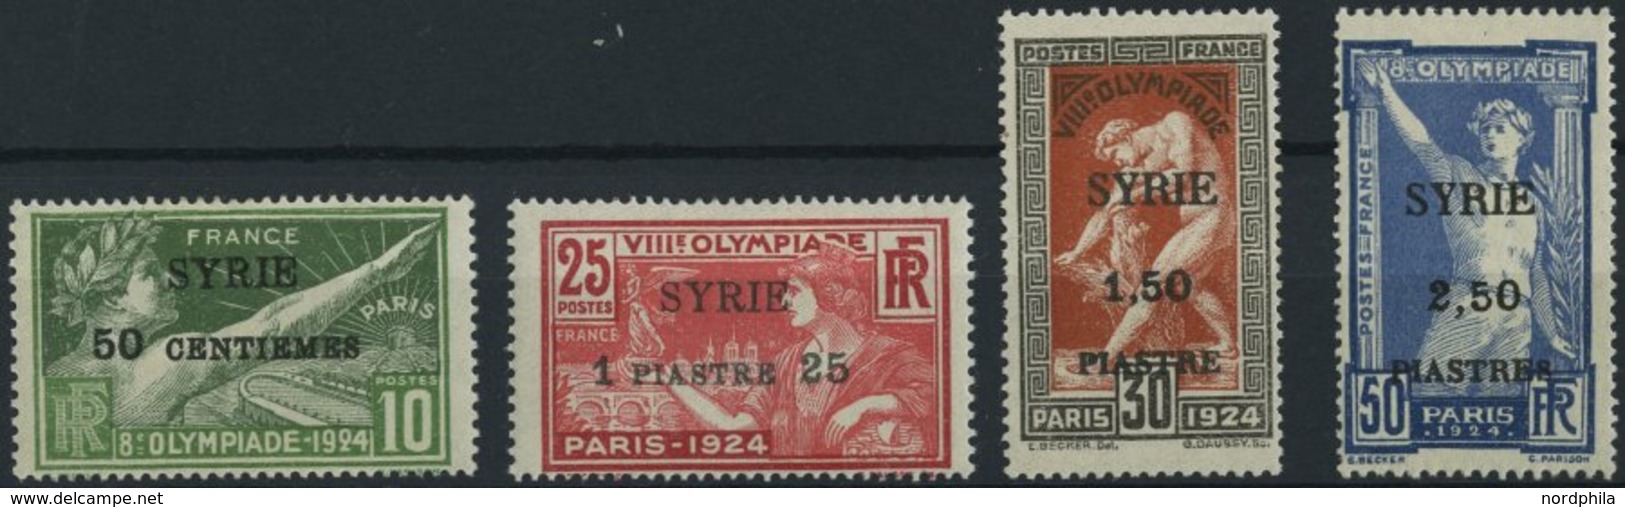 SYRIEN 227-30 *, 1924, Olympische Spiele, Aufdruck SYRIE, Falzreste, üblich Gezähnter Prachtsatz, Mi. 220.- - Siria